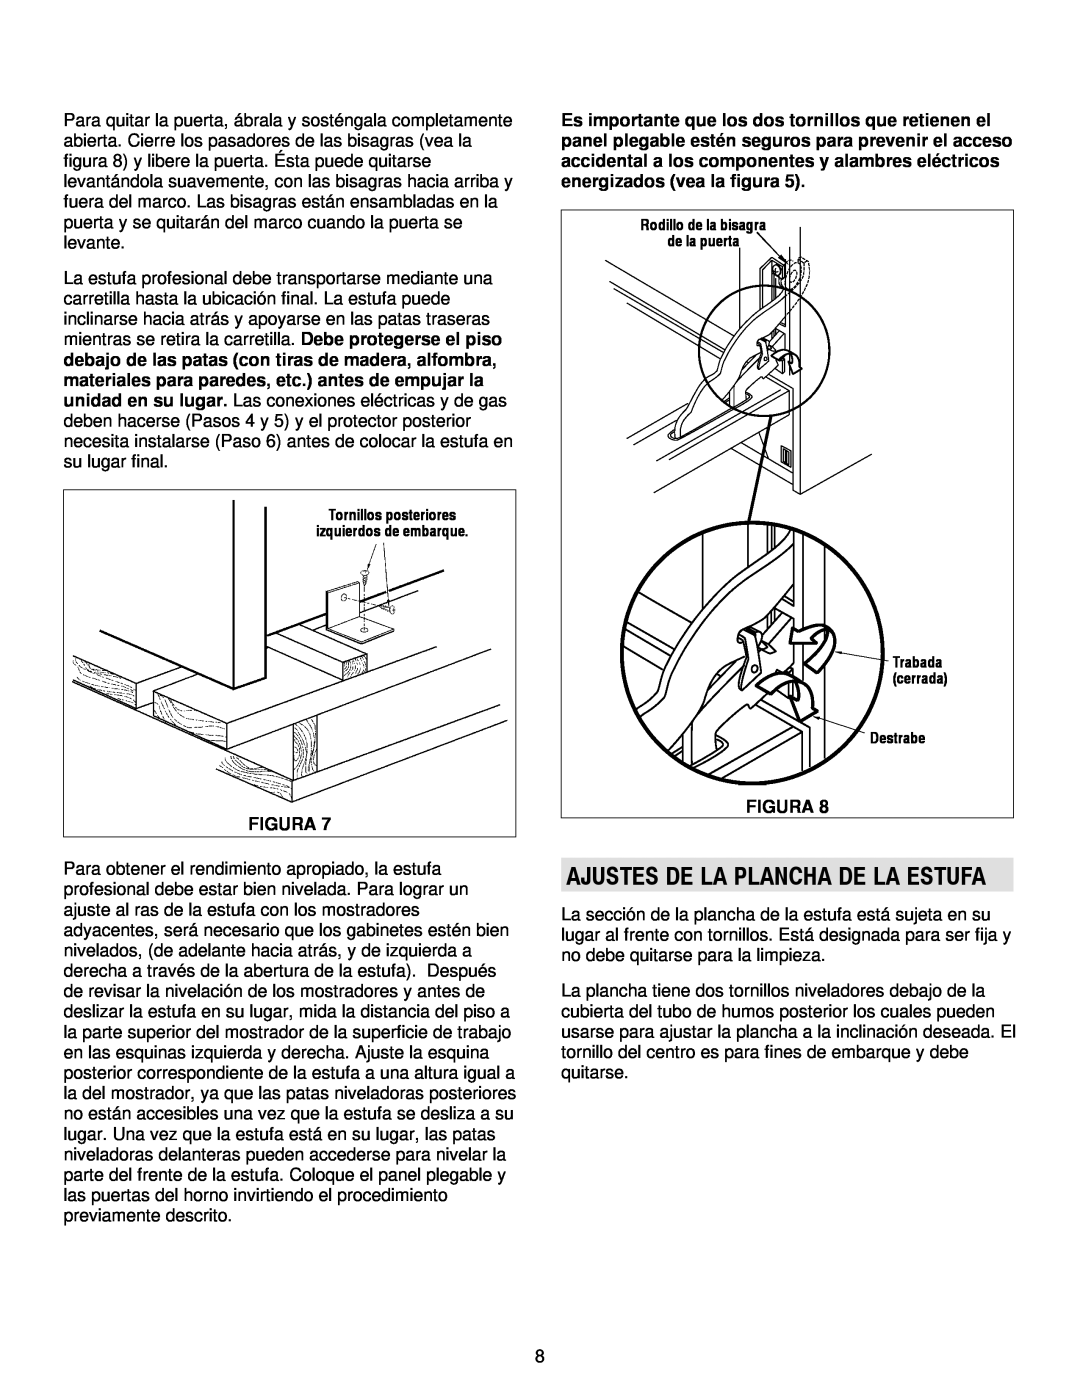 Jenn-Air 36, 30 manual Ajustes De La Plancha De La Estufa, Figura 